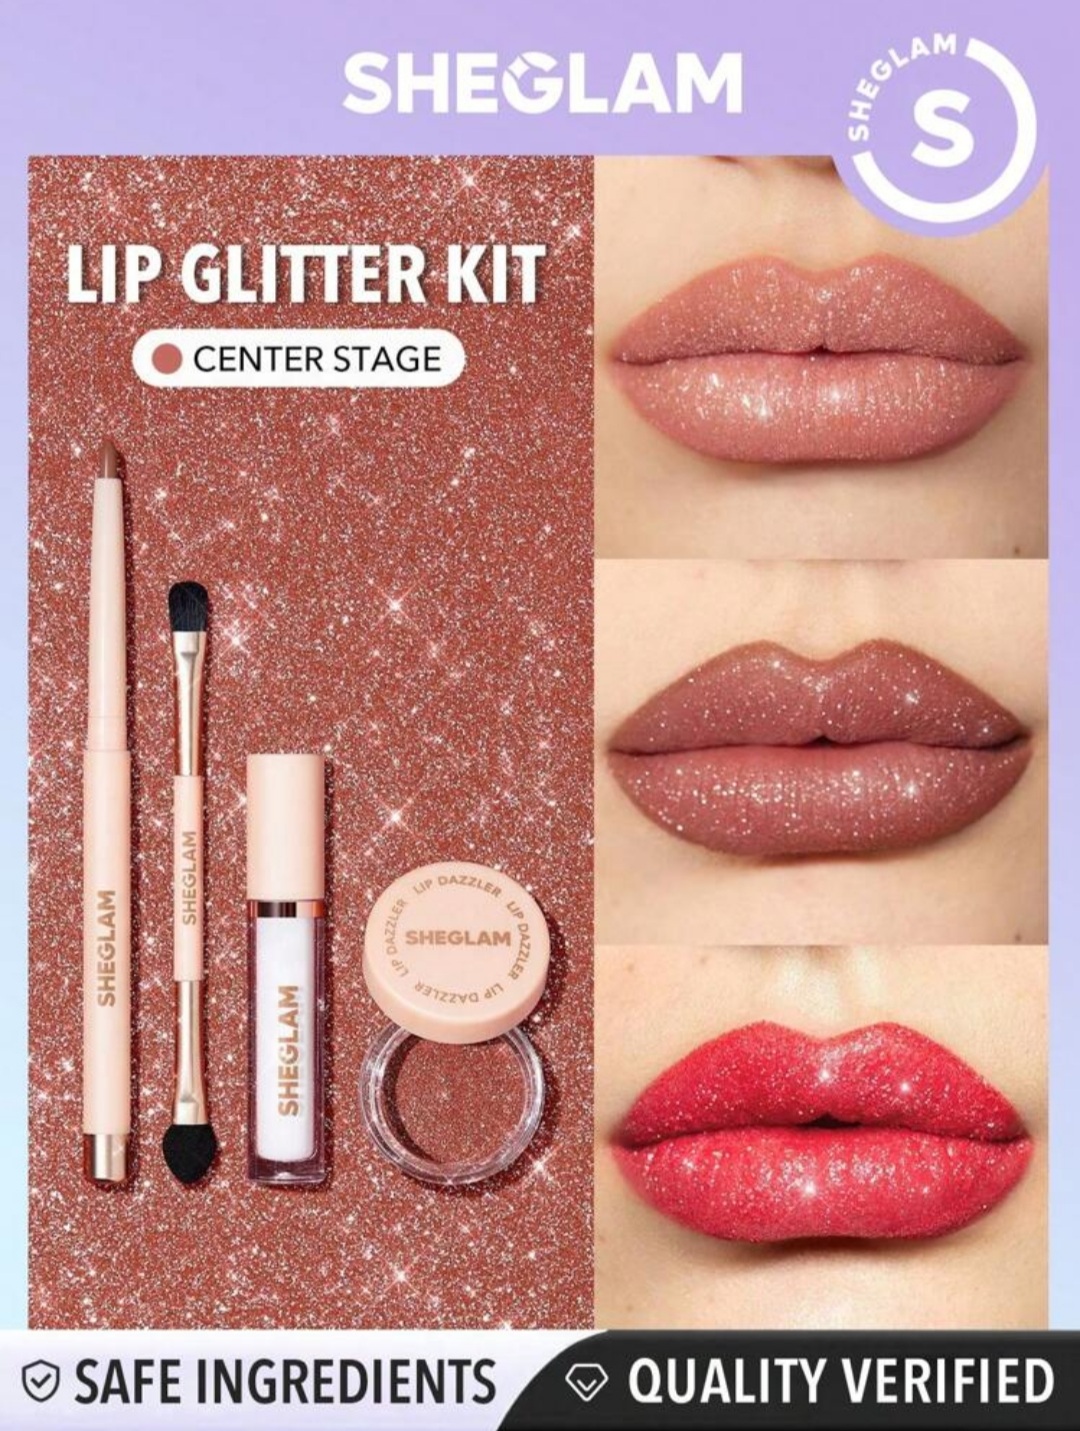 ست گلیتر لب شیگلم رنگ  Sheglam Lip Dazzler Glitter Kit - Center Stage